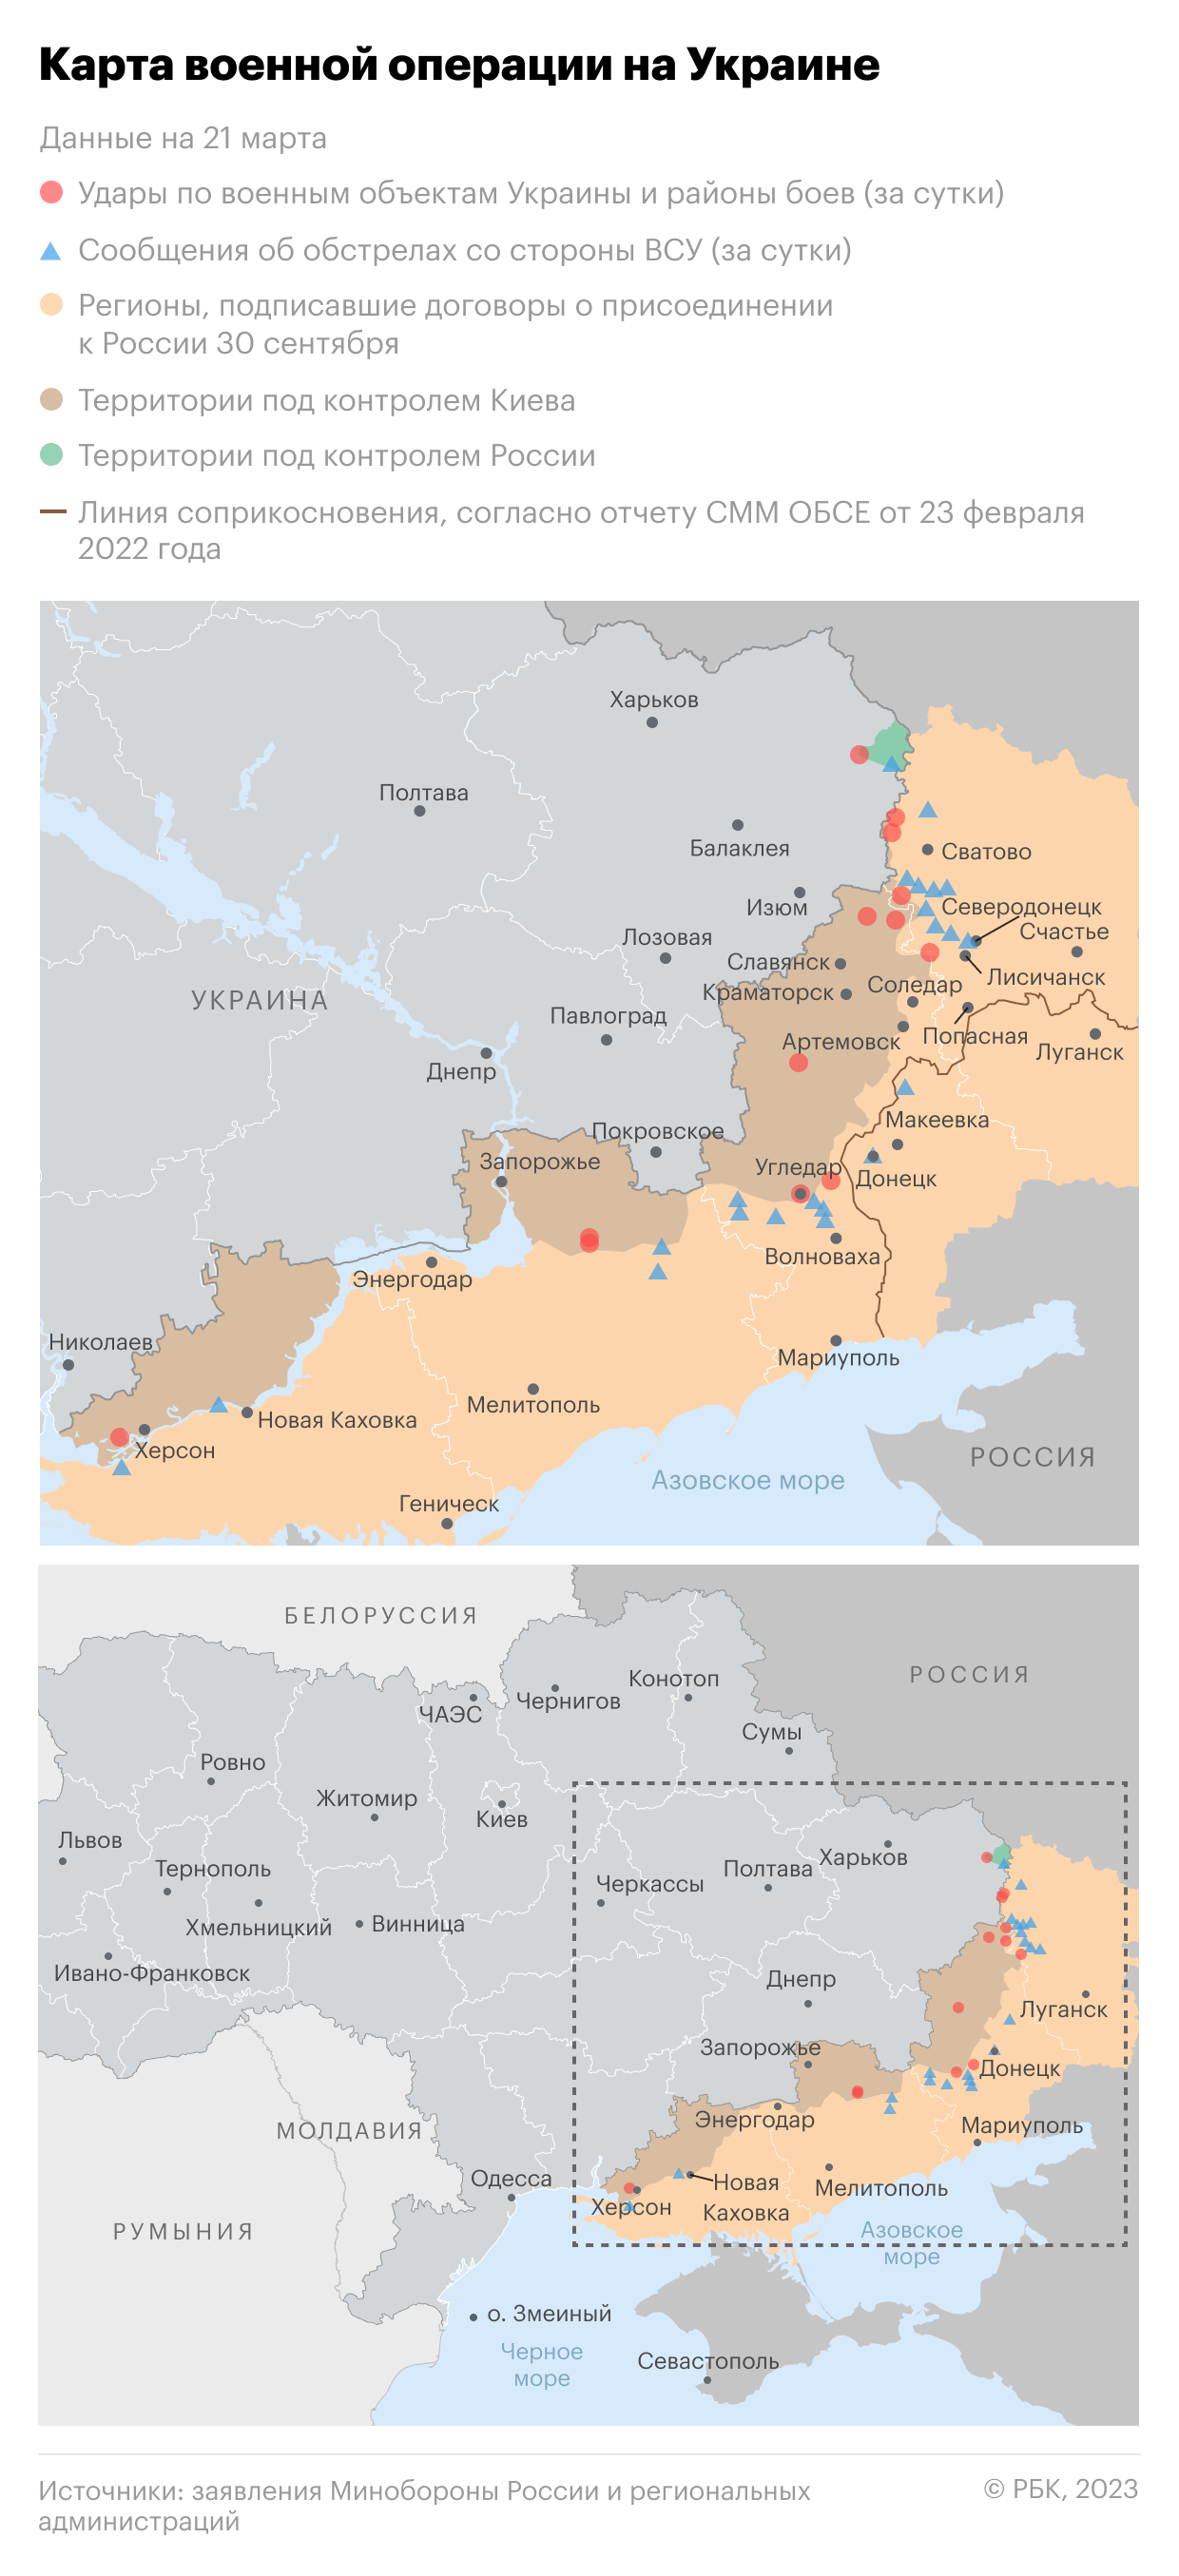 Разведка Украины признала наличие диверсантов в России и вербовку россиян